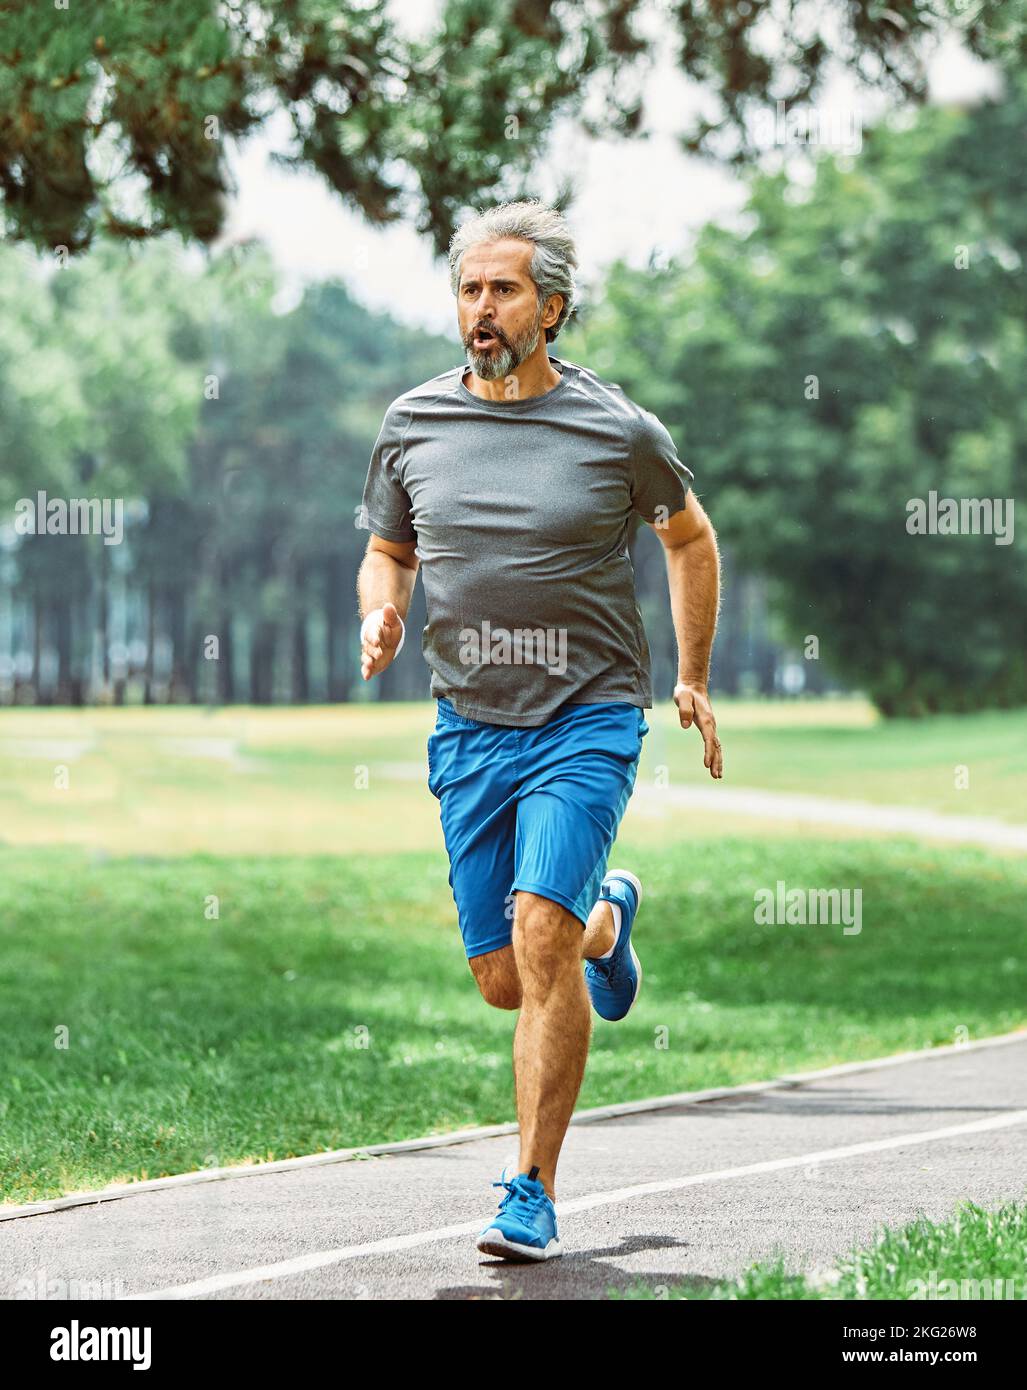 senior fitness homme sport actif exercice course jogging santé coureur taille jogger entraînement athlète entraînement vitesse marathon personnes âgées gary cheveux Banque D'Images